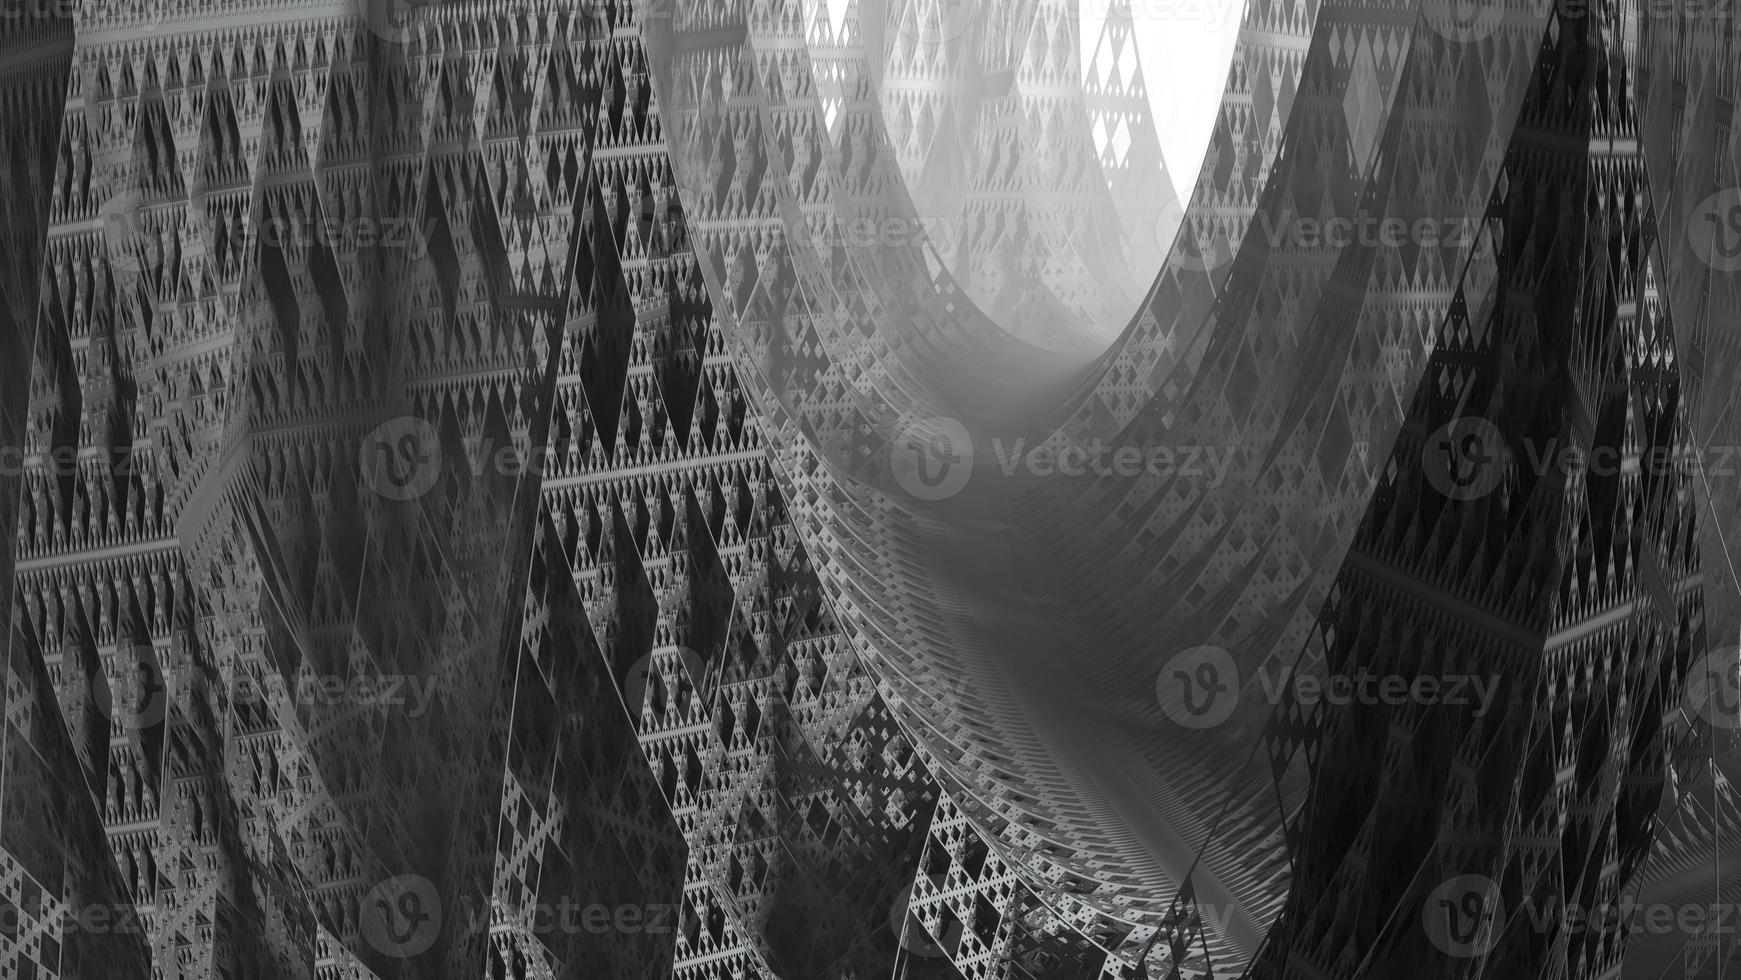 abstracte computer gegenereerde fractal ontwerp. 3D-afbeelding van een prachtige oneindige wiskundige mandelbrot set fractal. foto